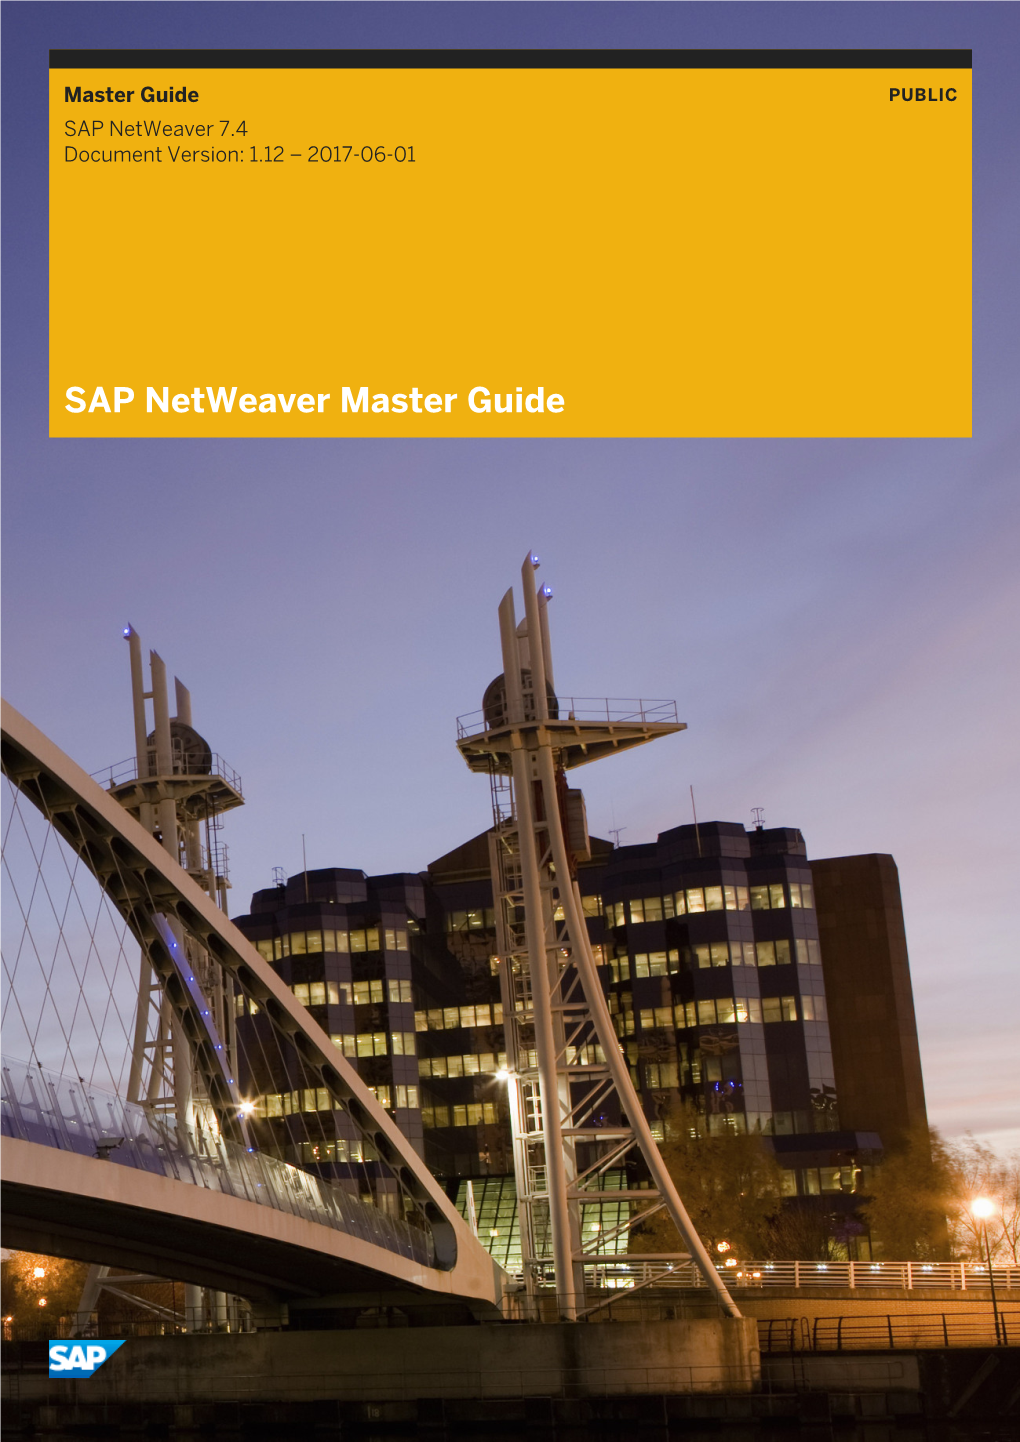 Master Guide for SAP Netweaver